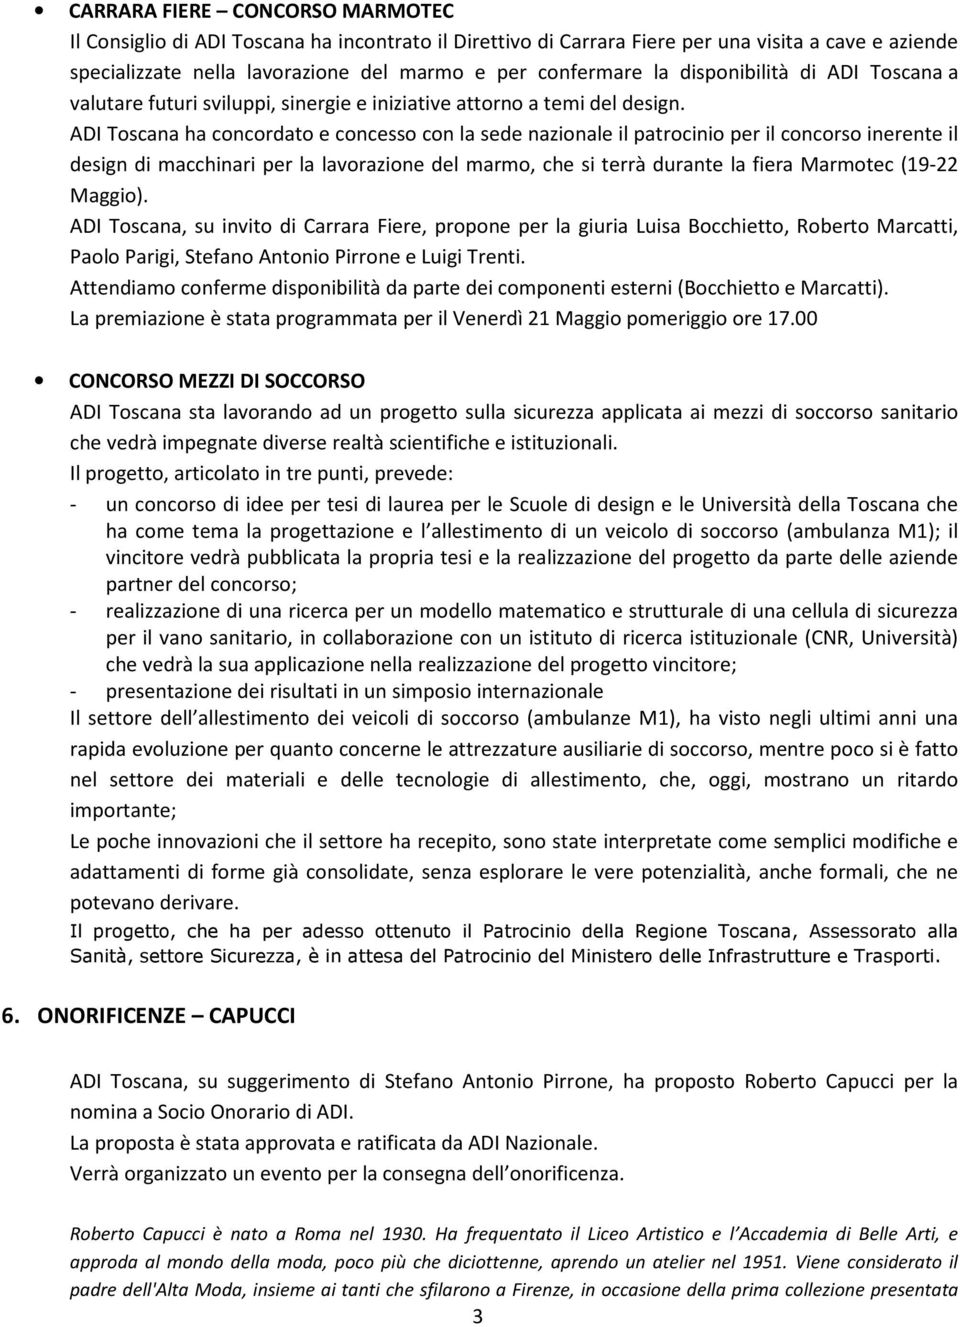 ADI Toscana ha concordato e concesso con la sede nazionale il patrocinio per il concorso inerente il design di macchinari per la lavorazione del marmo, che si terrà durante la fiera Marmotec (19-22